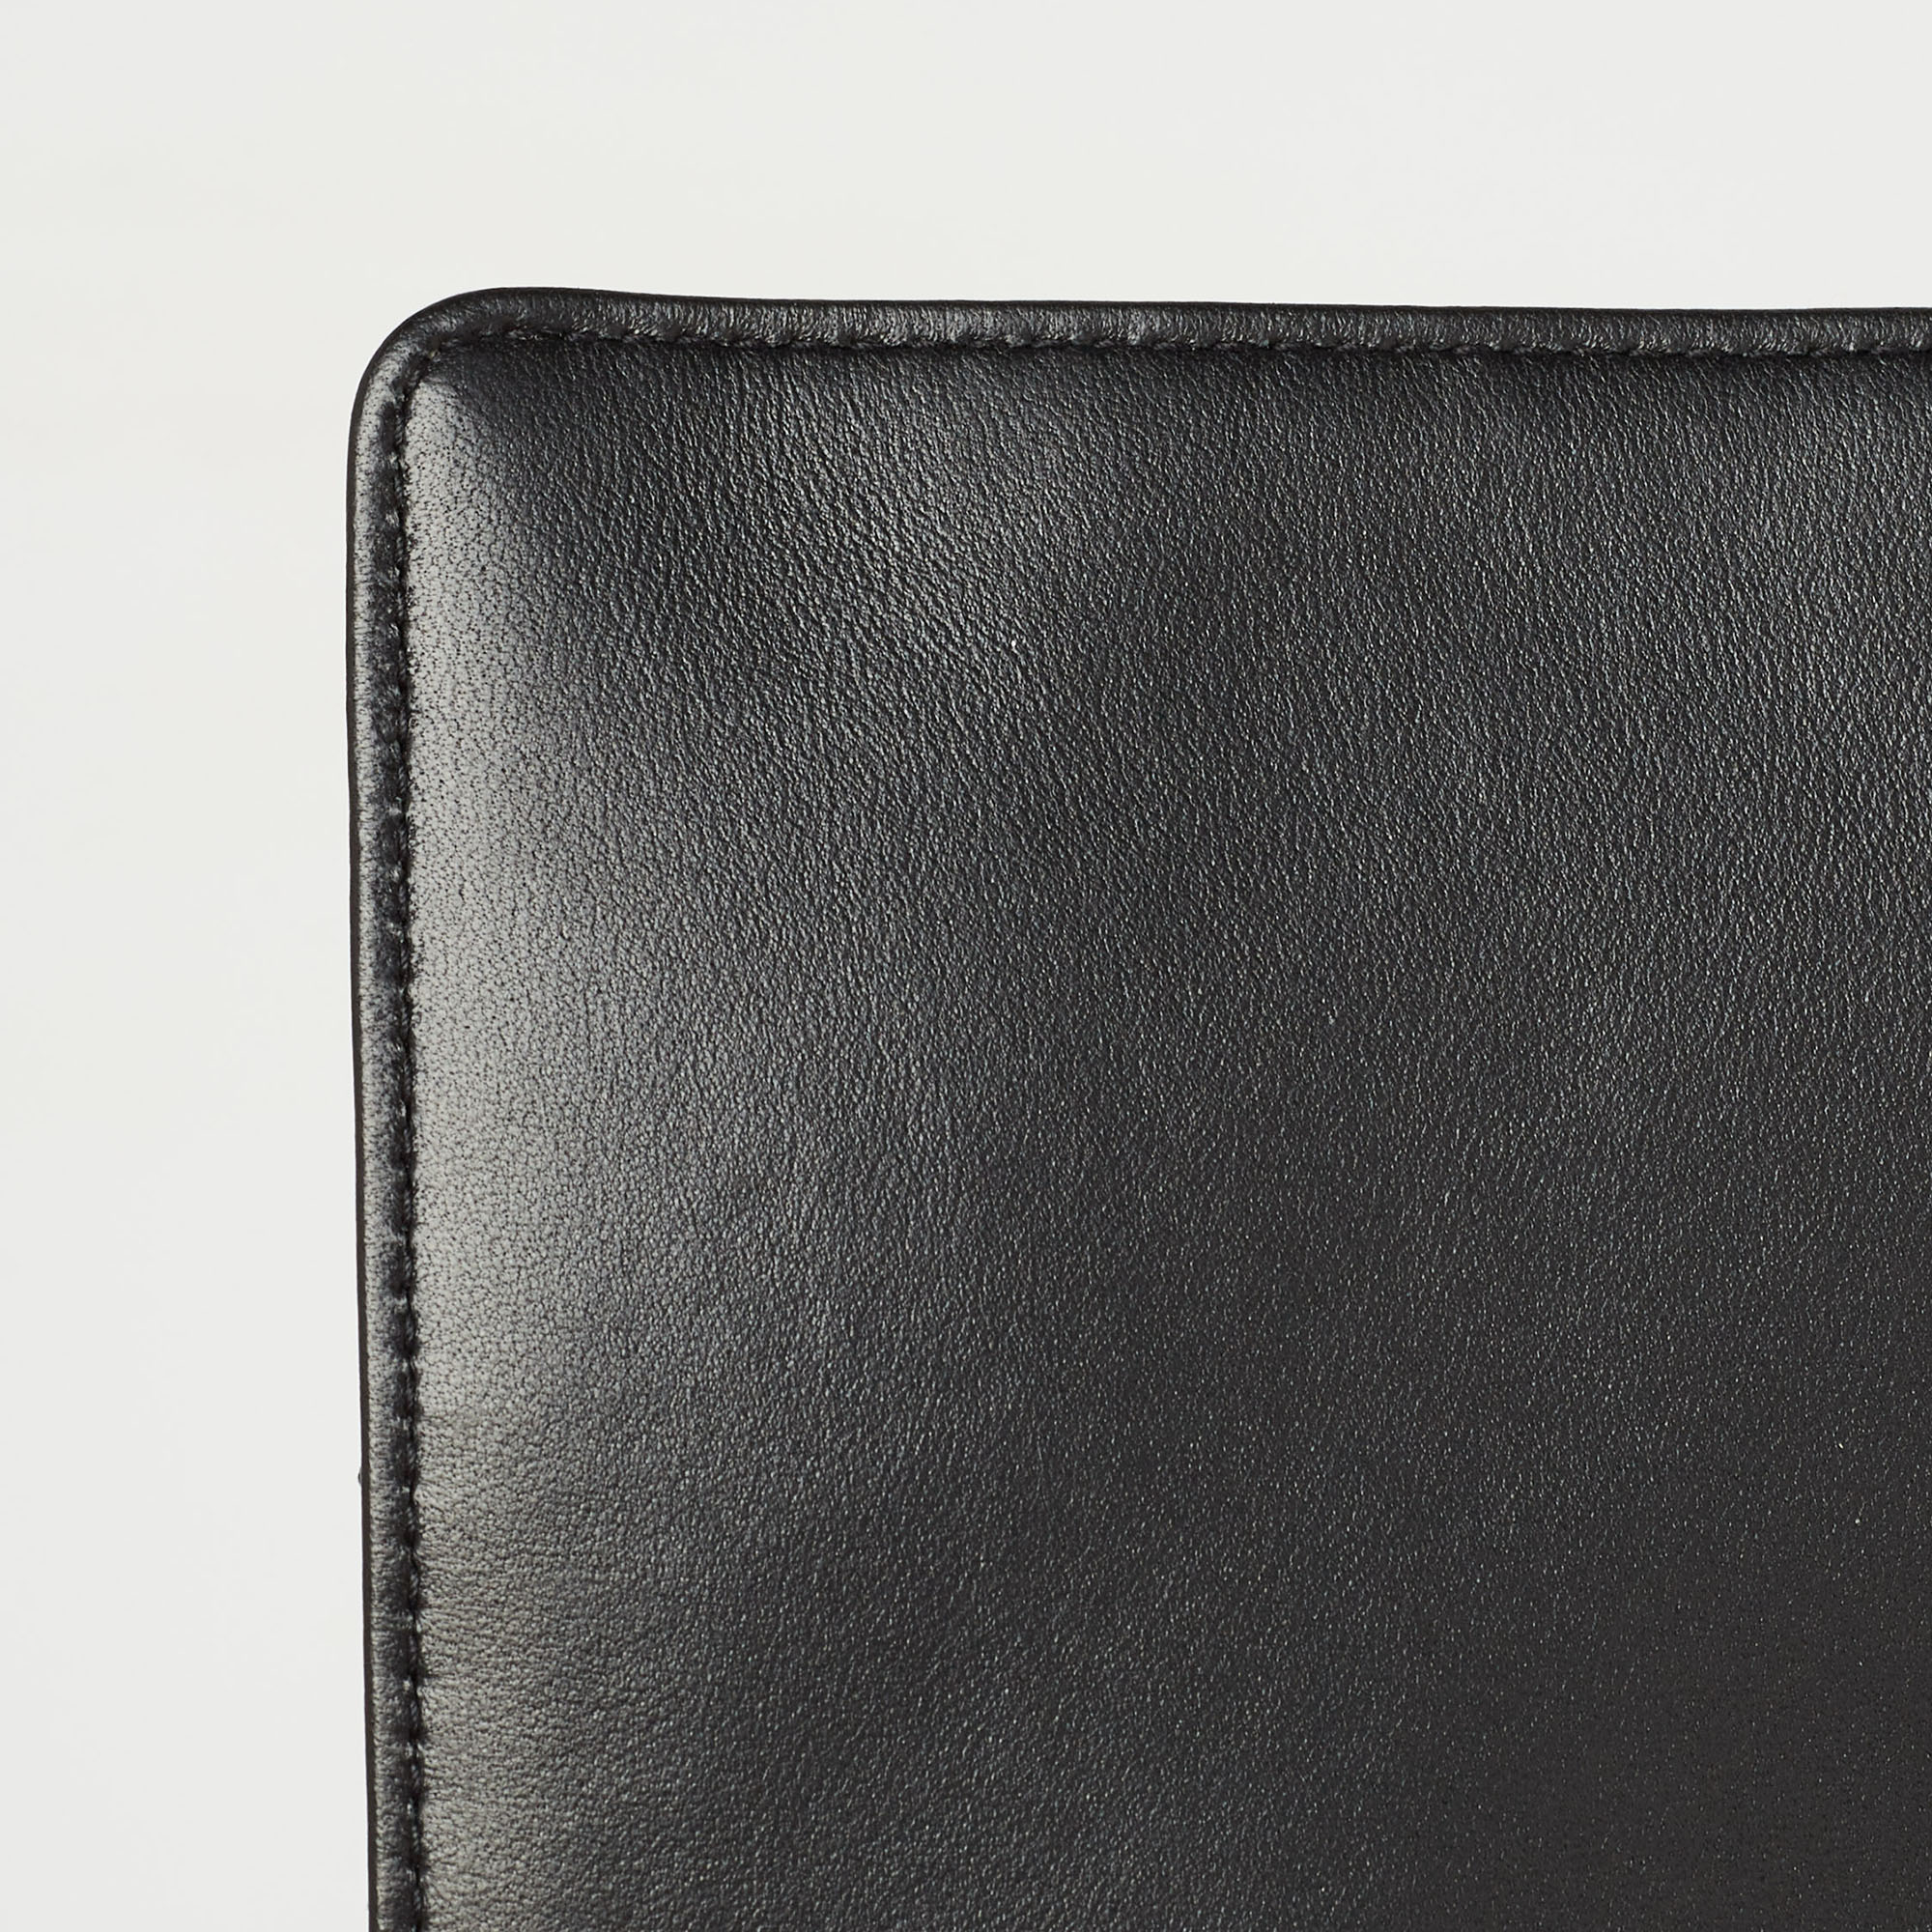 Dior Black Cannage Leather Large Caro Shoulder Bag